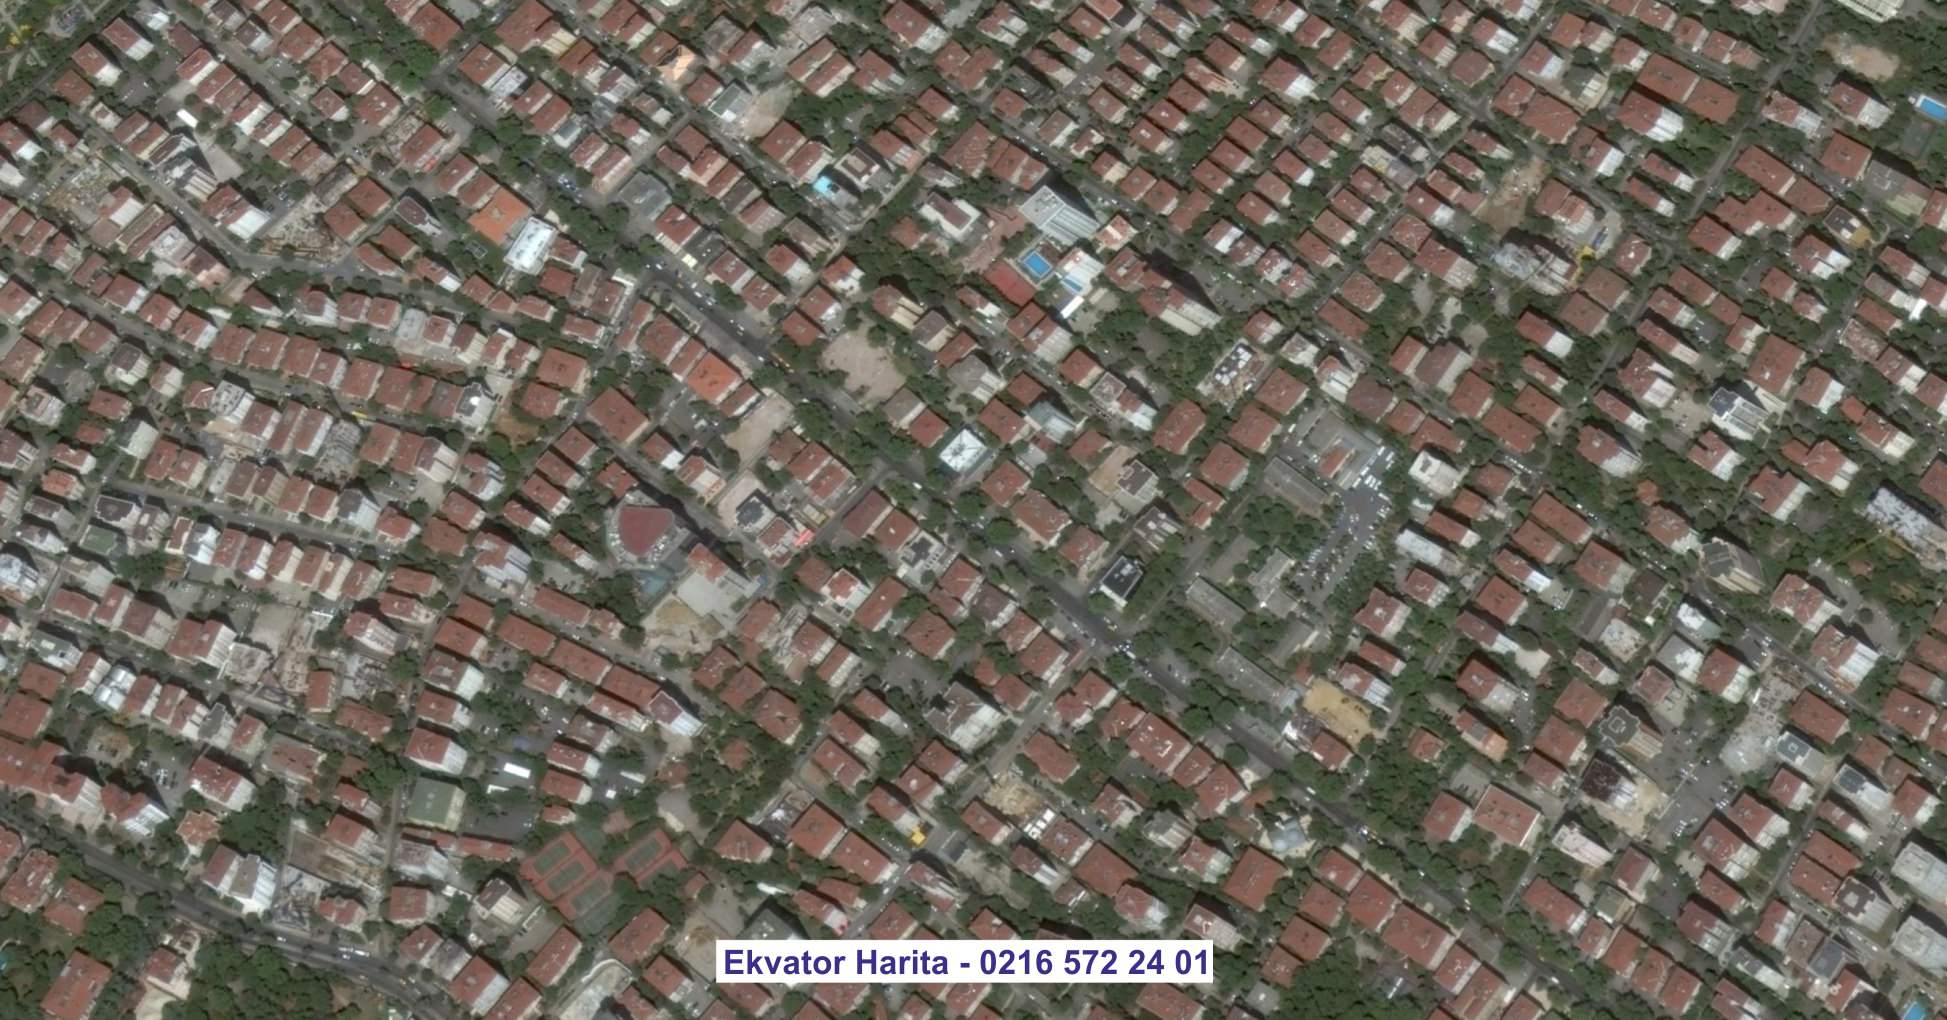 Humus Uydu Görüntüsü Örnek Fotoğrafı